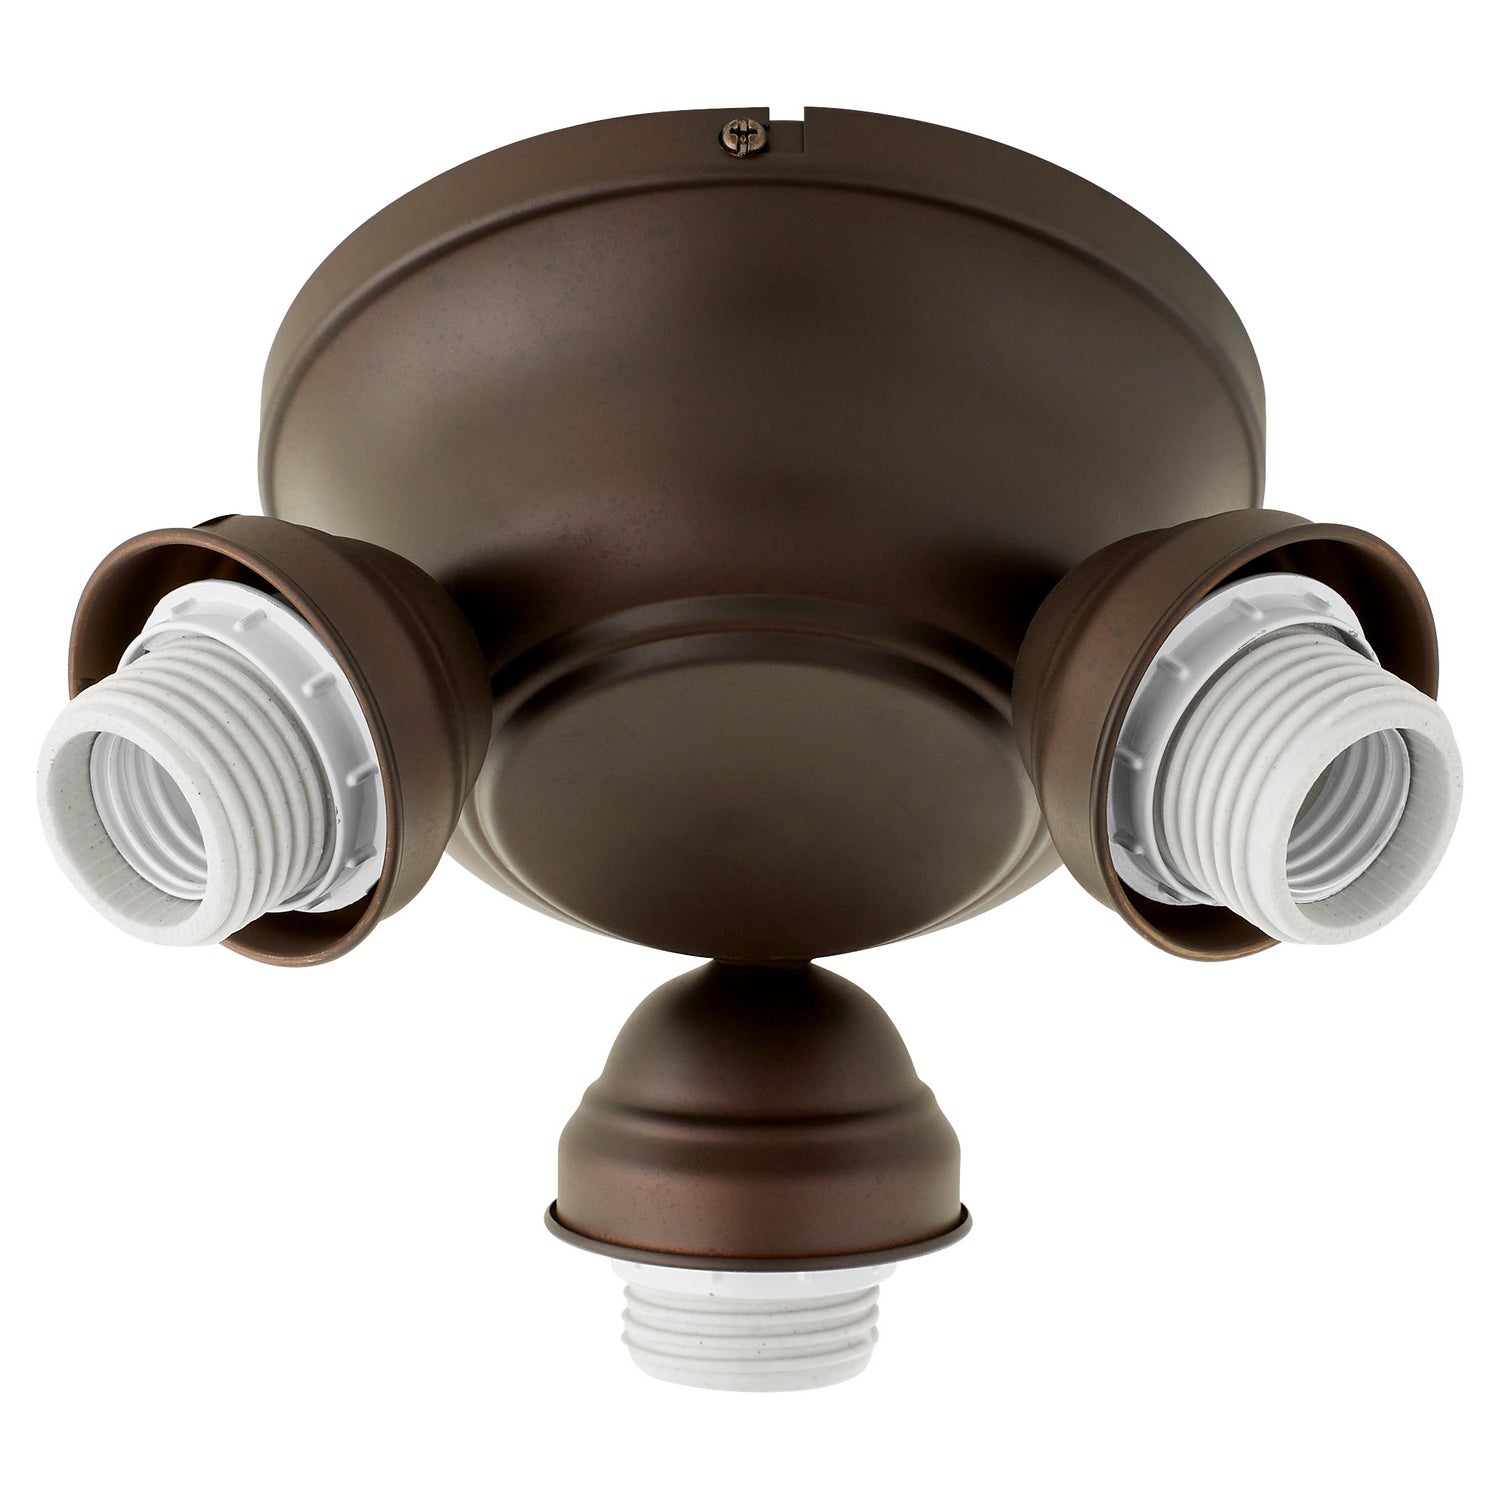 Quorum - 2383-9186 - LED Fan Light Kit - Salon - Oiled Bronze